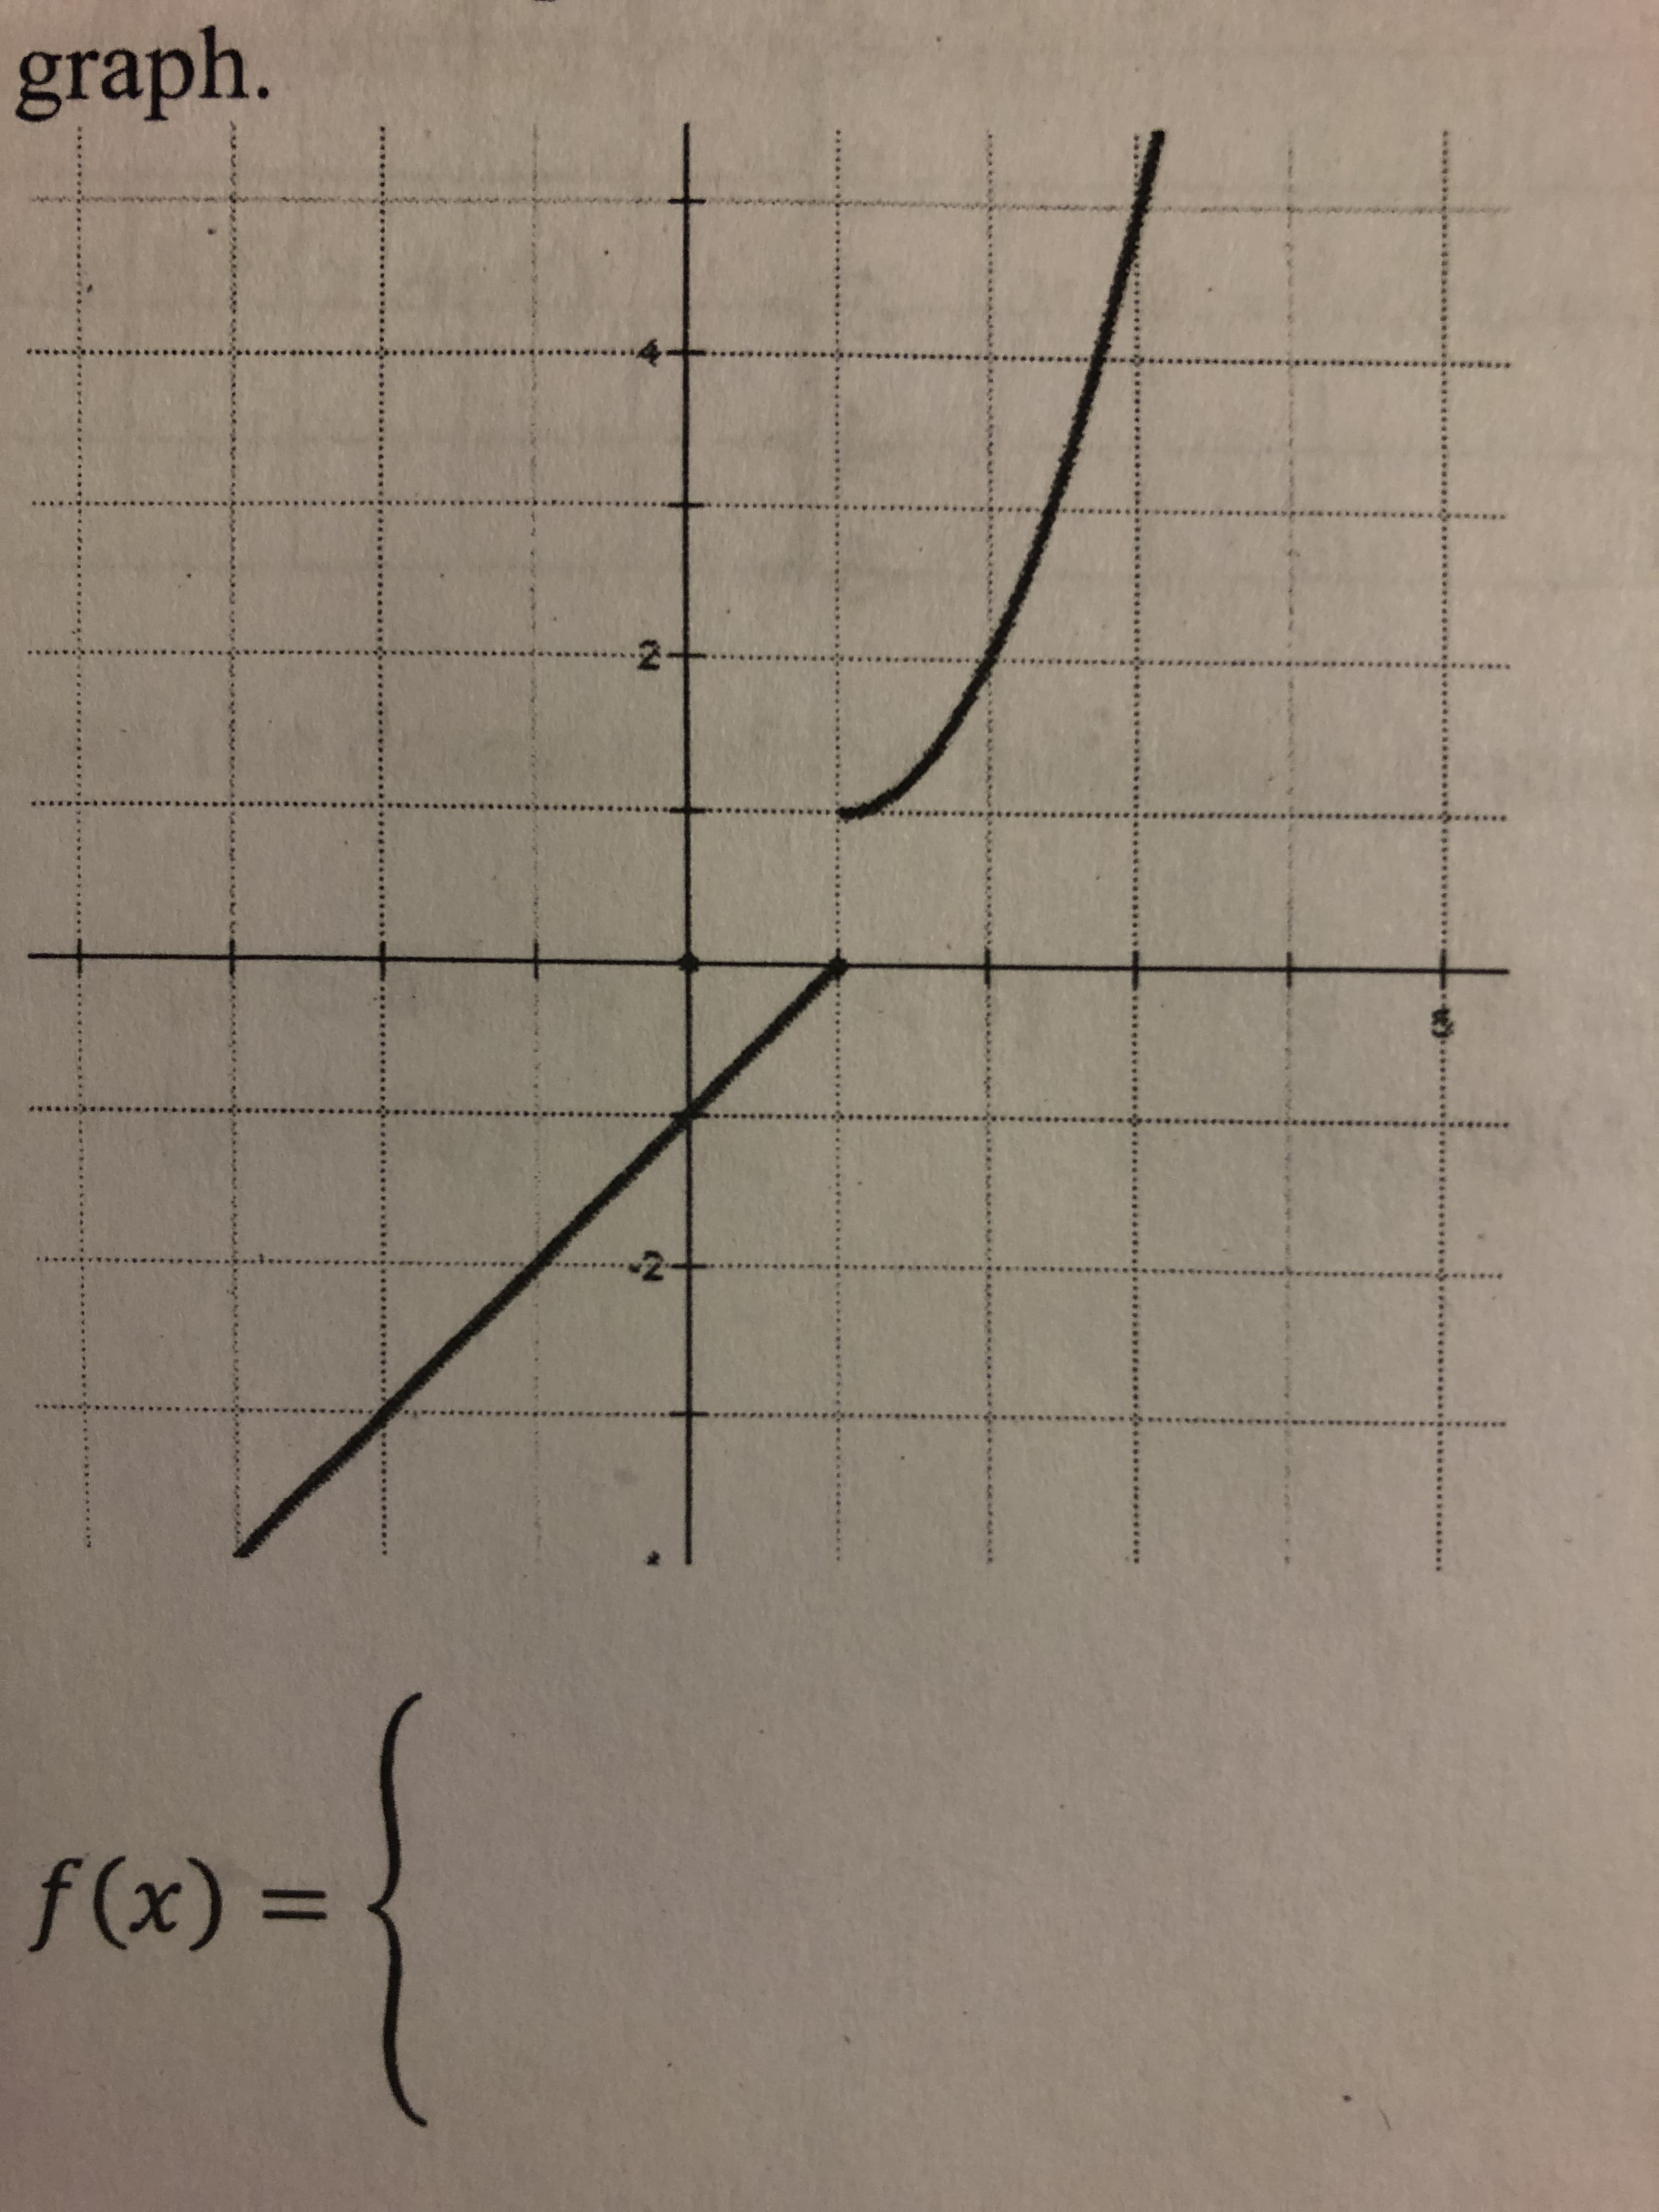 (x)f
%3D
graph.
